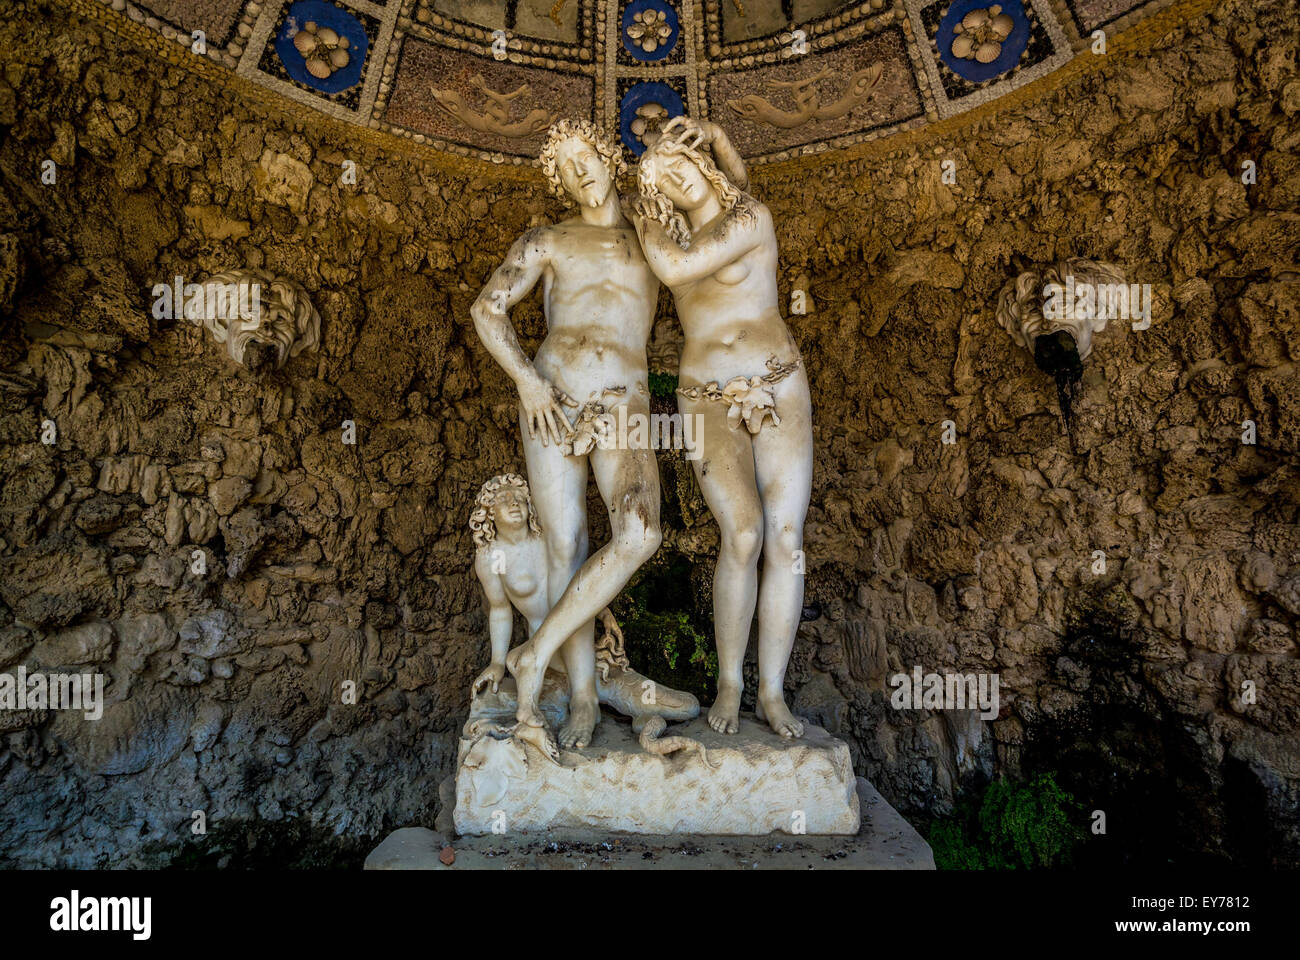 La Grotte d'Adam et d'Eve qui tire son nom des sculptures qu'elle contient de Michel-Ange Noccherini.Jardins Boboli.Florence, Italie. Banque D'Images